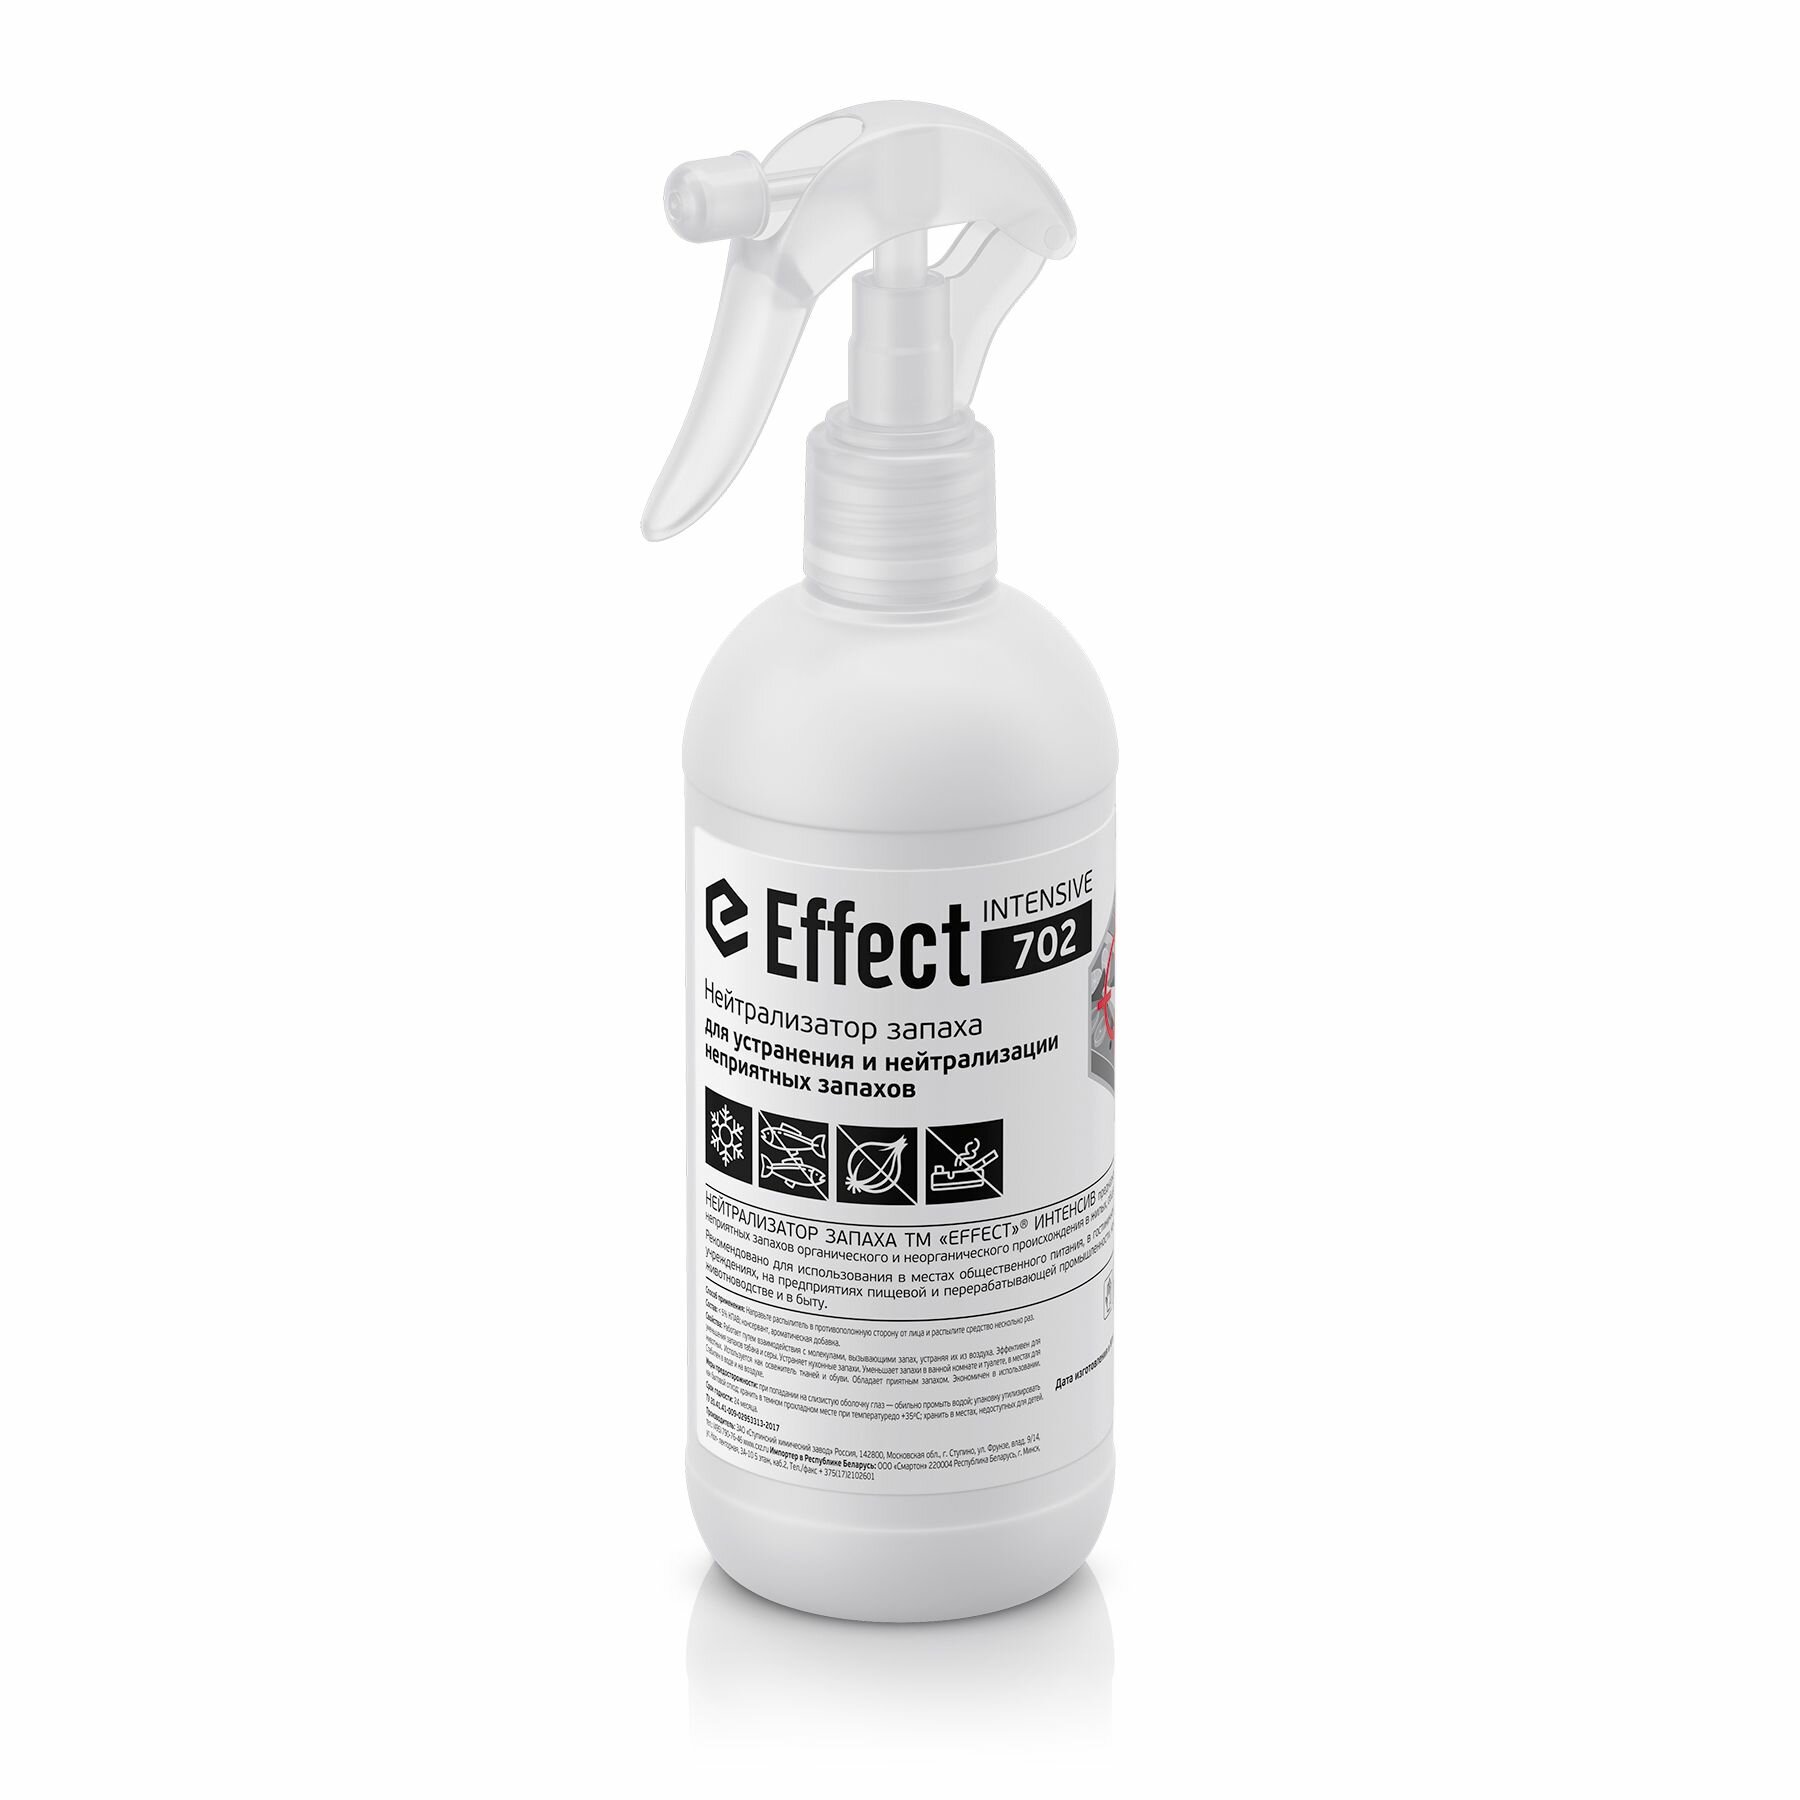 Нейтрализатор запахов Effect Intensive 702, профессиональный, 500 мл, спрей